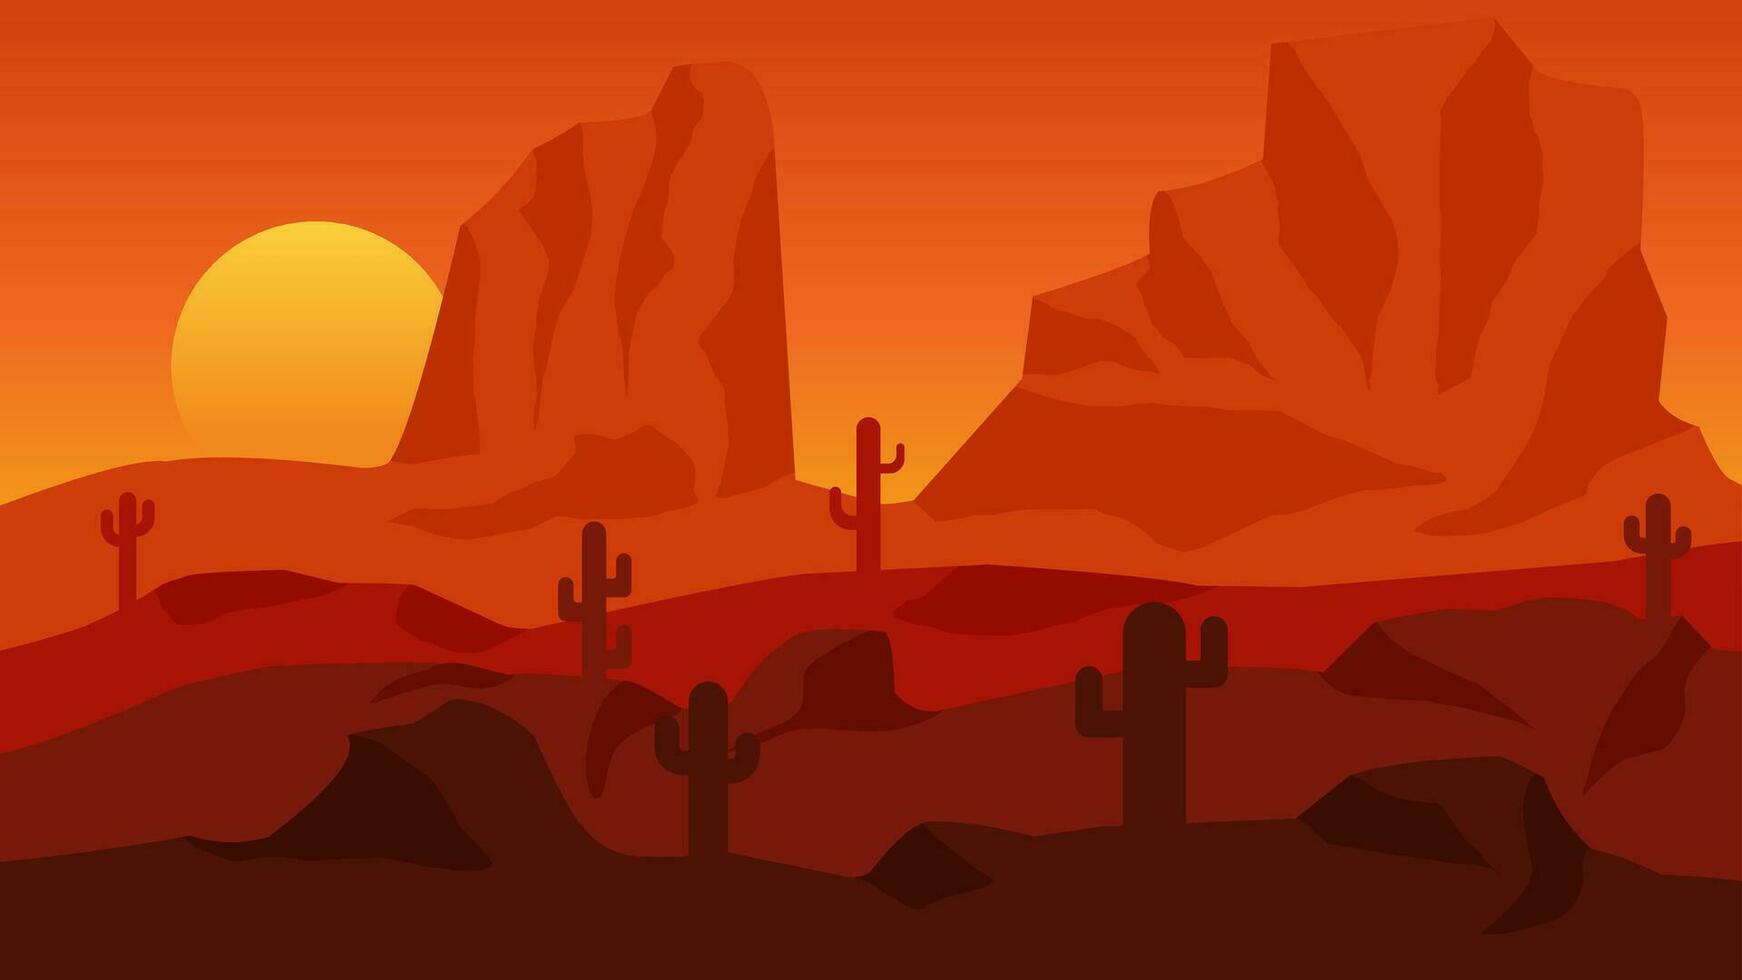 Wüste Landschaft Vektor Illustration. Schlucht Wüste Landschaft mit Kaktus, hoch Stein und Sonnenuntergang Himmel. Mexikaner Wüste Silhouette Landschaft zum Hintergrund, Hintergrund, Anzeige oder Landung Seite